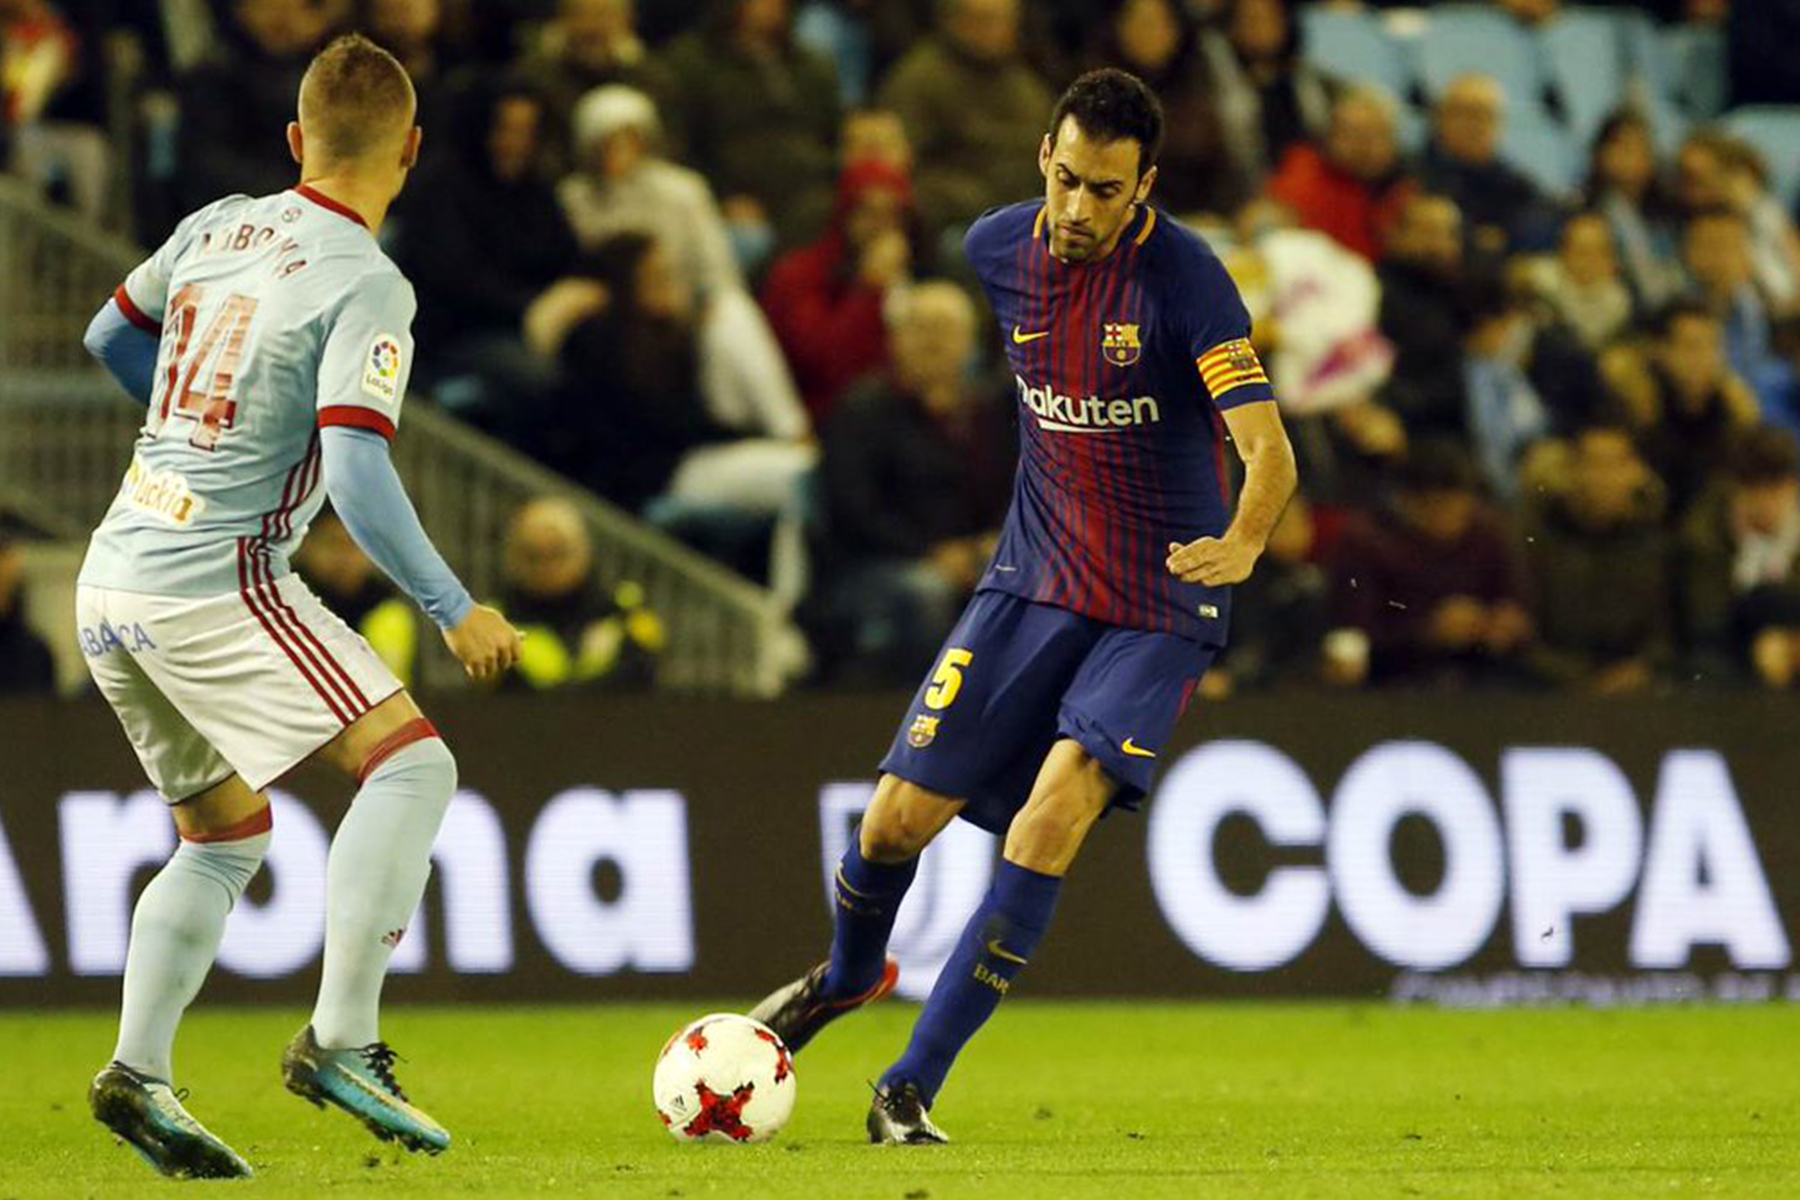 FC Barcelona empata 1-1 al Celta de Vigo en Copa del Rey 